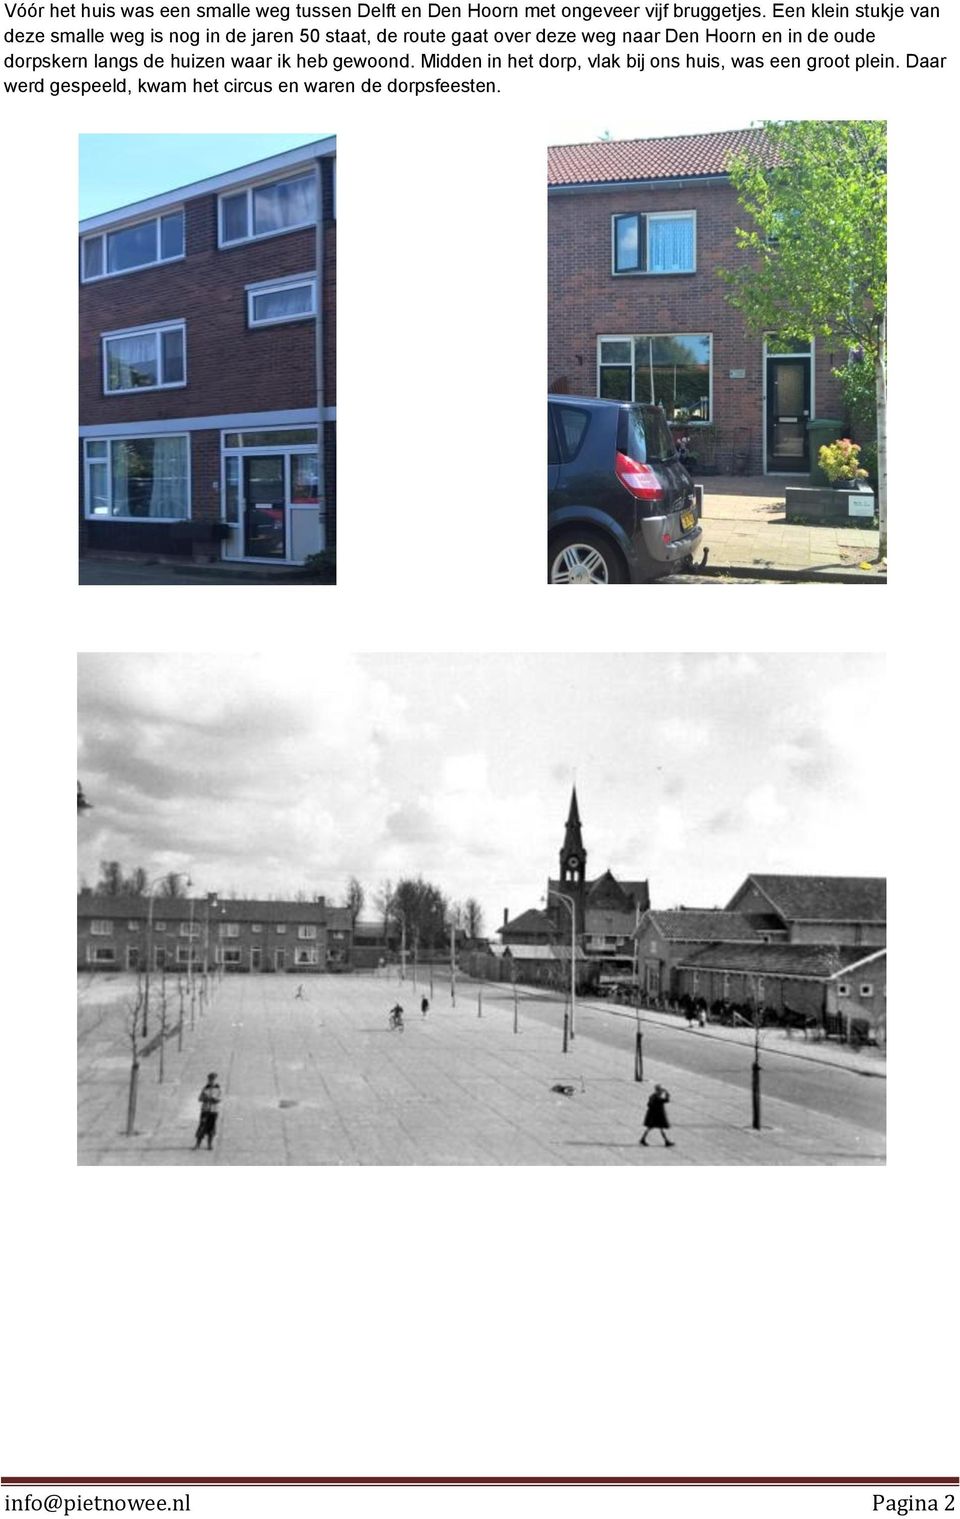 Den Hoorn en in de oude dorpskern langs de huizen waar ik heb gewoond.